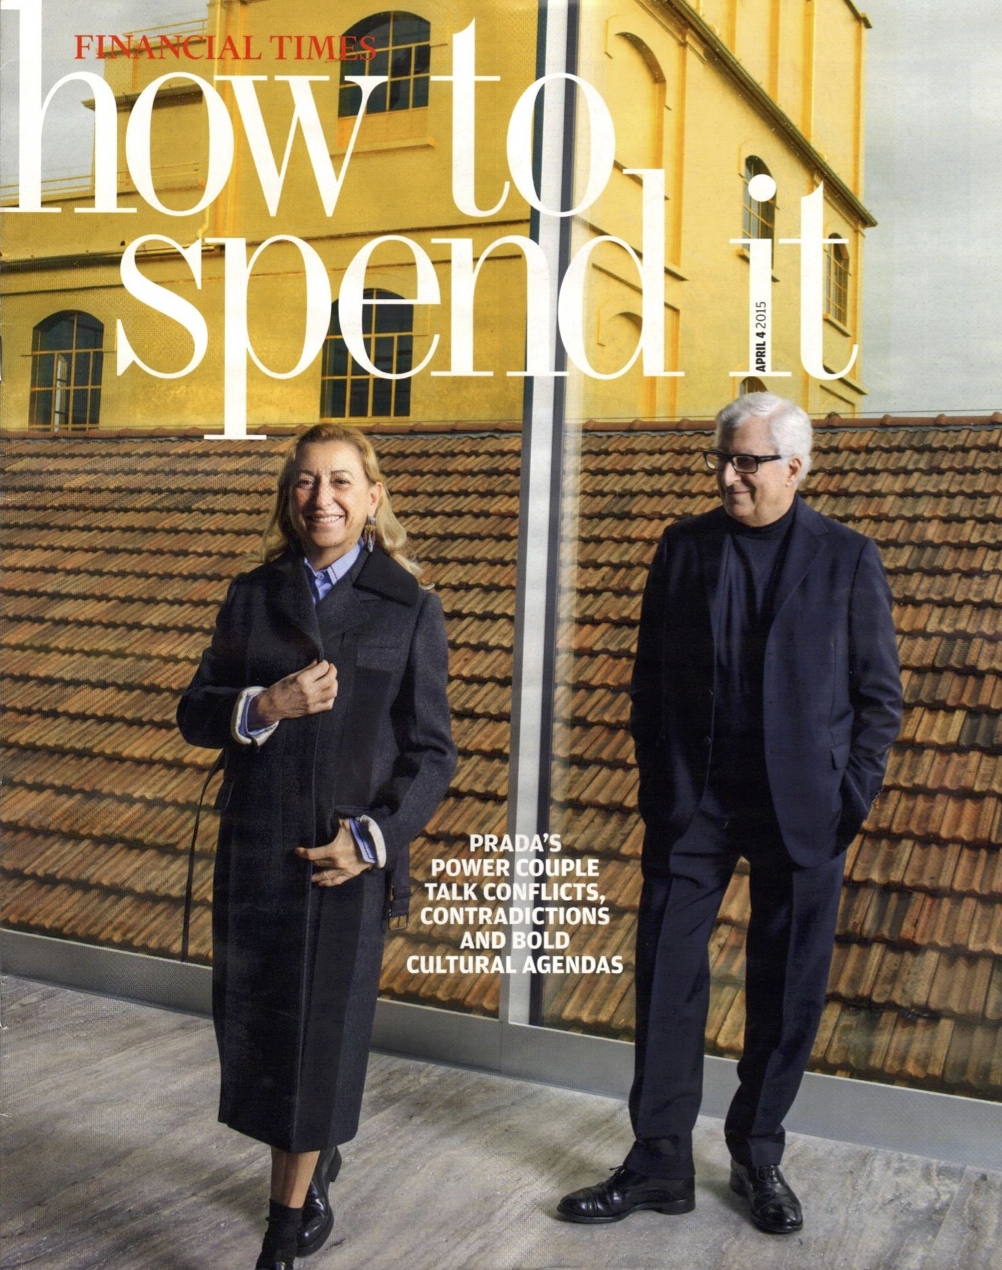 Miuccia Prada and Patrizio Bertelli, Fondazione Prada Milano, Financial Times Magazine